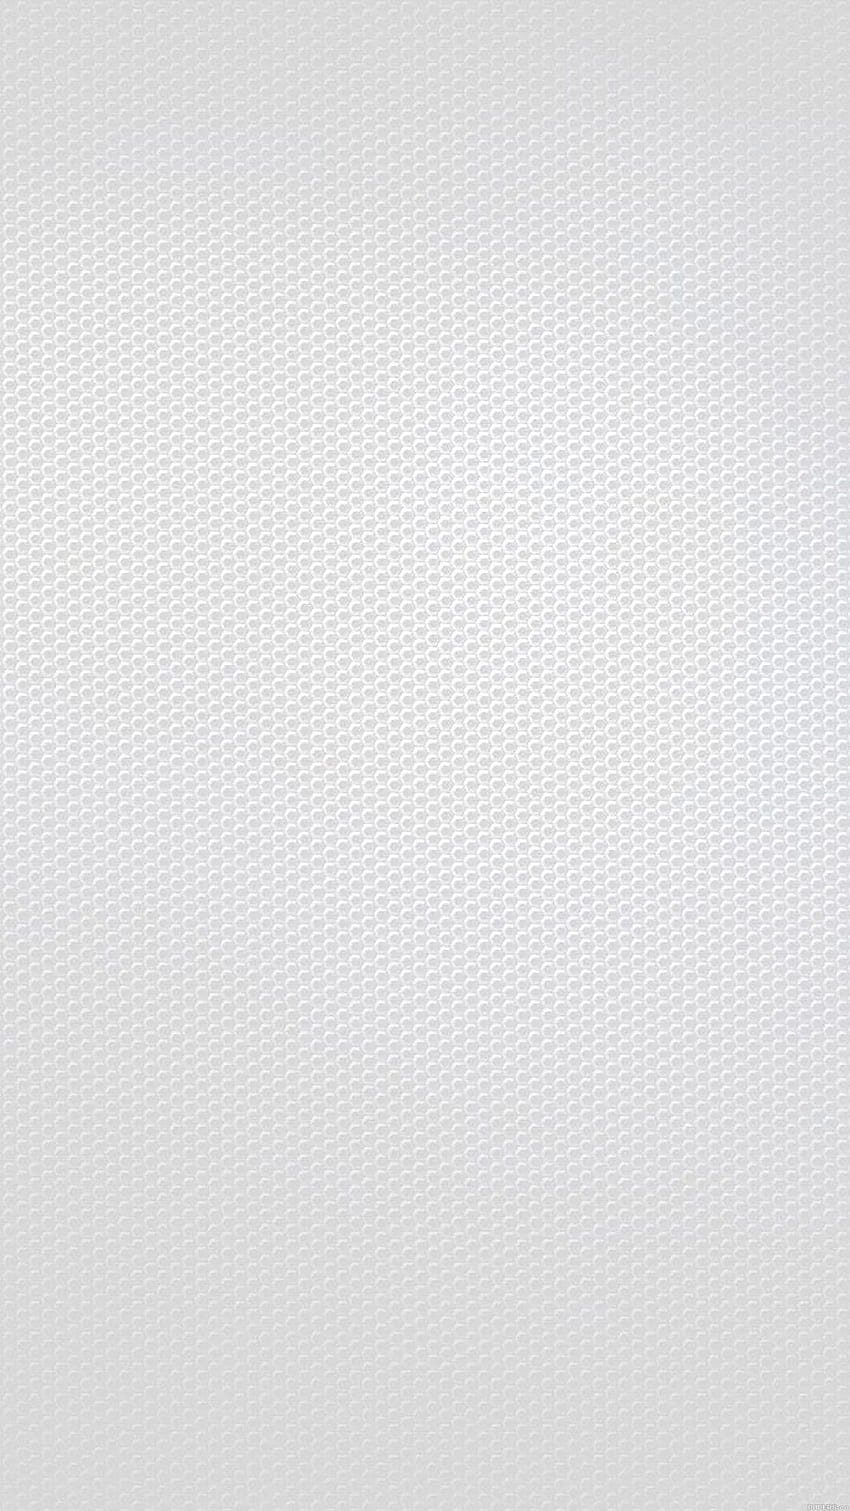 Grey Carbon Fiber Wallpapers - Top Những Hình Ảnh Đẹp